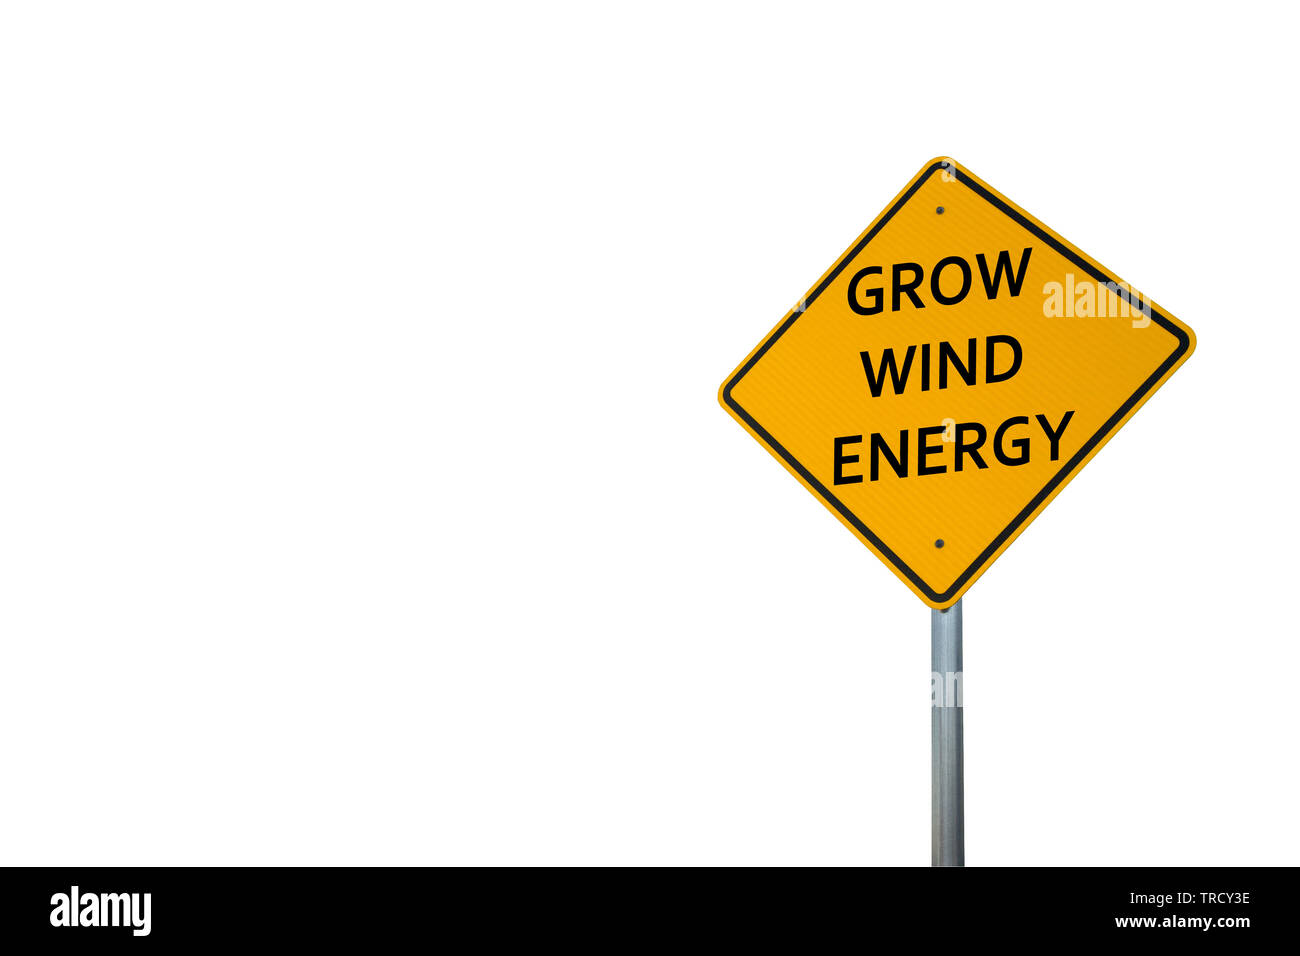 Grow Wind Energy Stock Photo